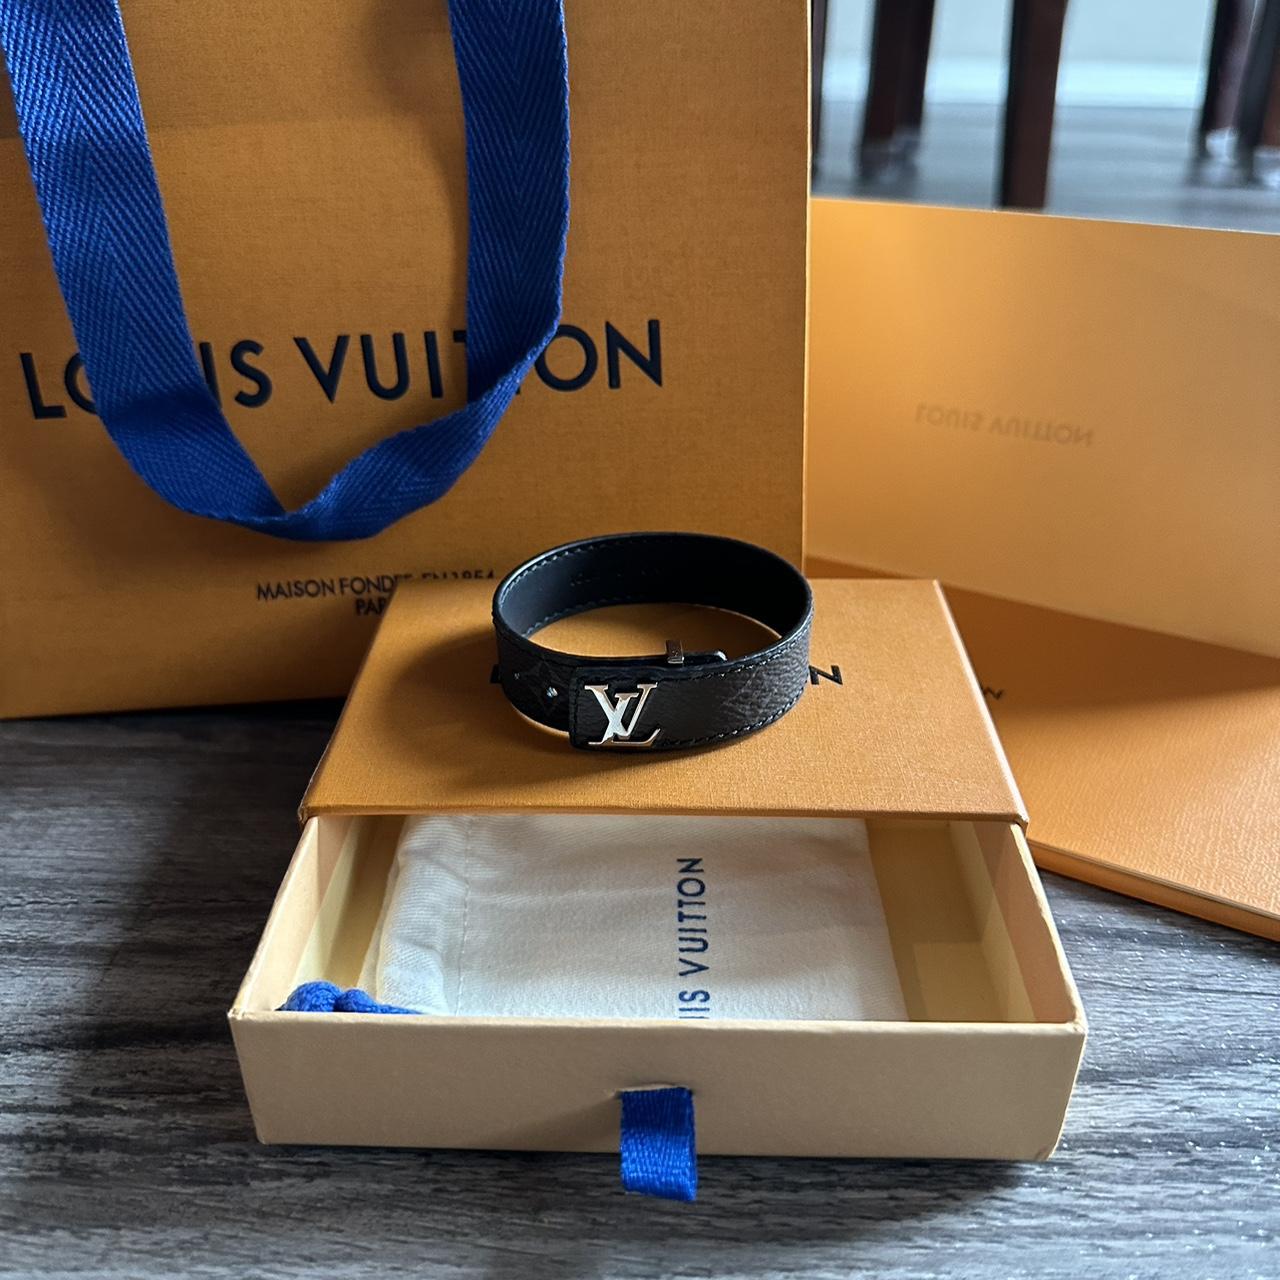 Louis Vuitton Alma Bracelet Mint Conditioner Was - Depop